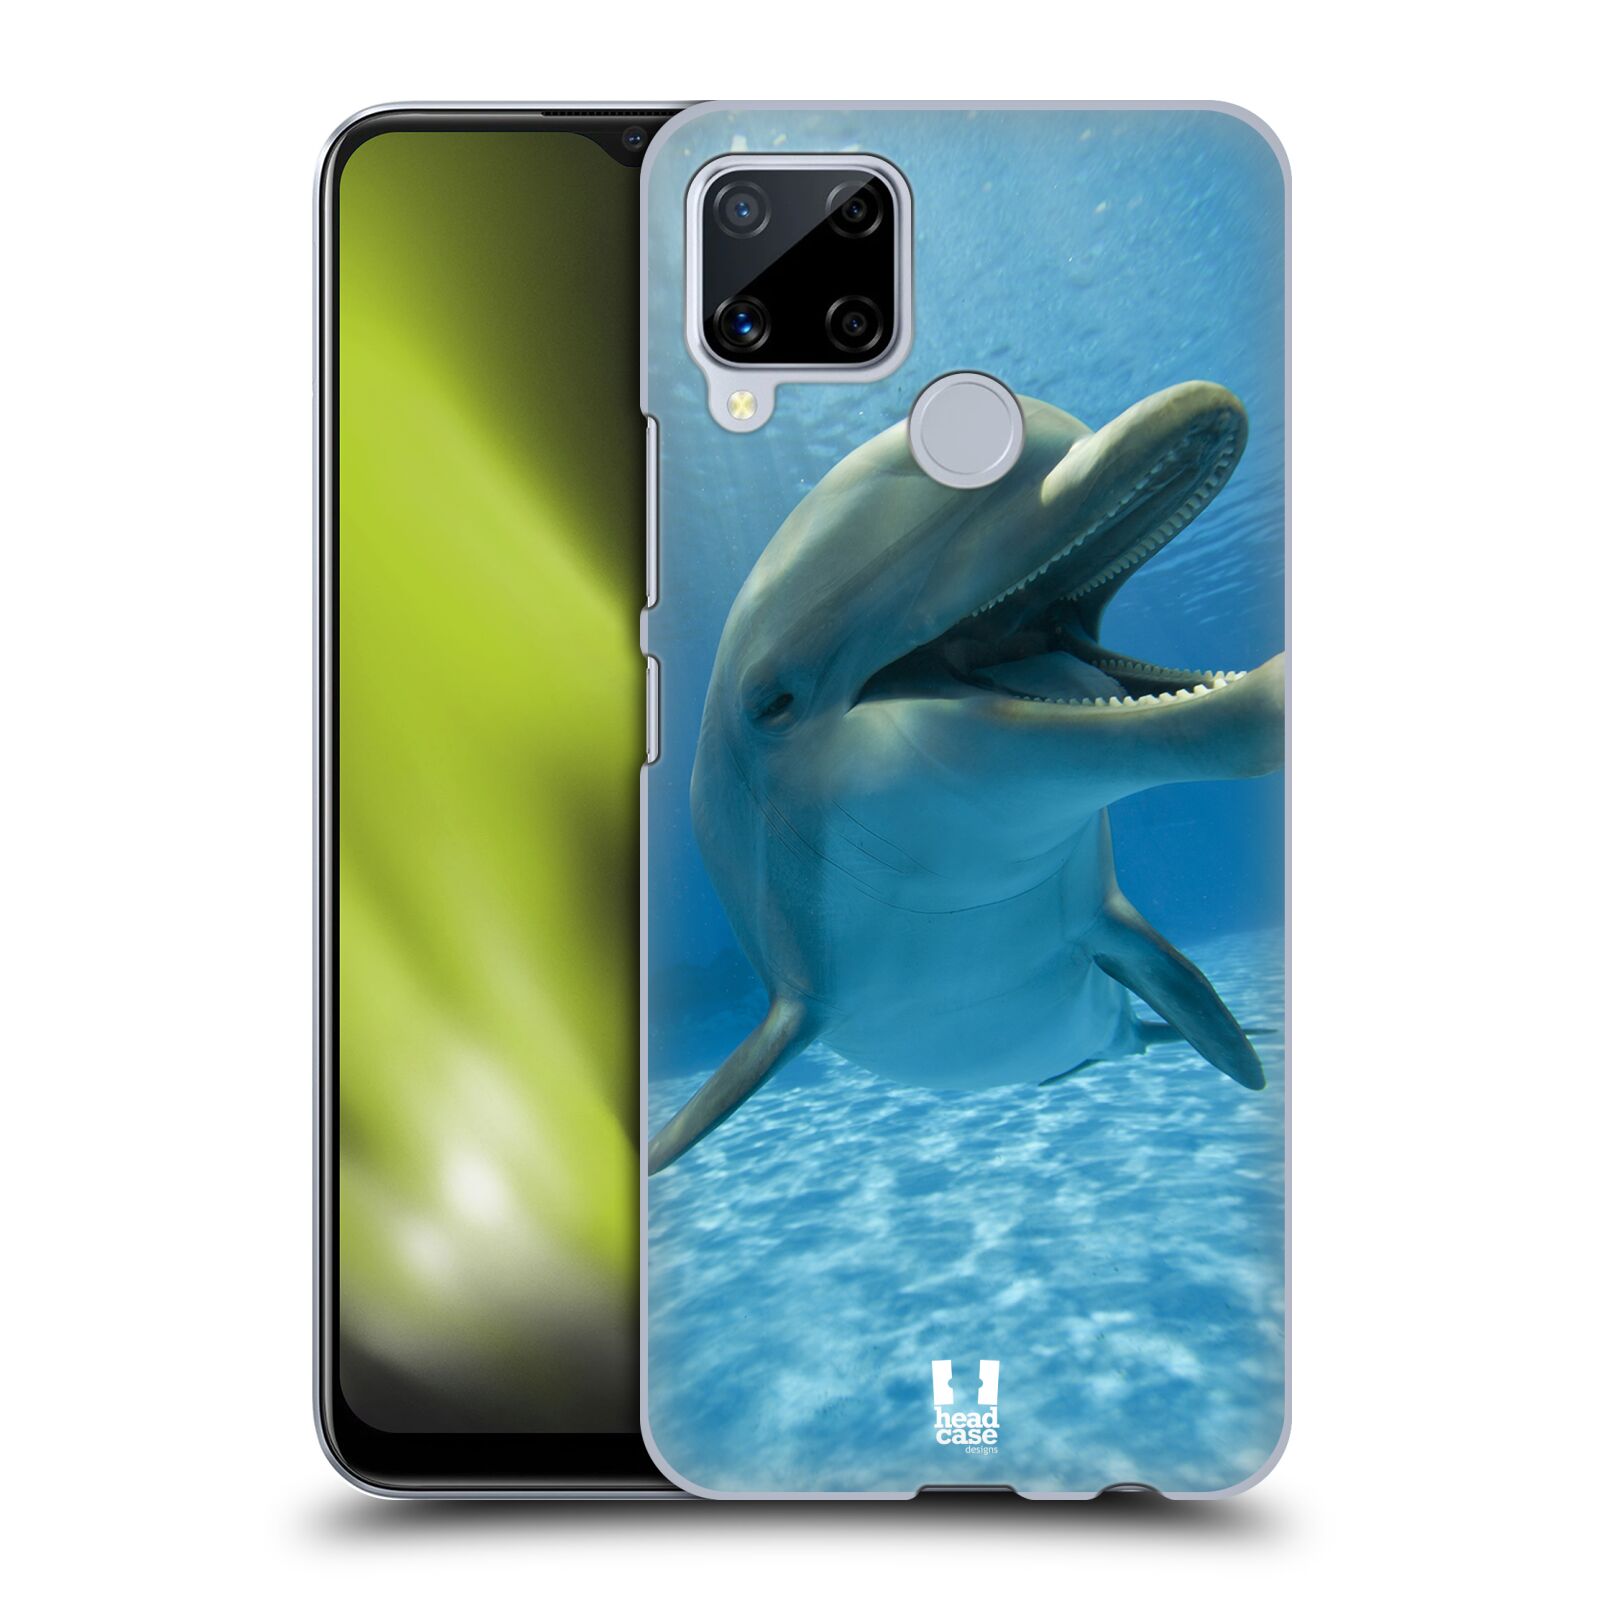 Zadní obal pro mobil Realme C15 - HEAD CASE - Svět zvířat delfín v moři